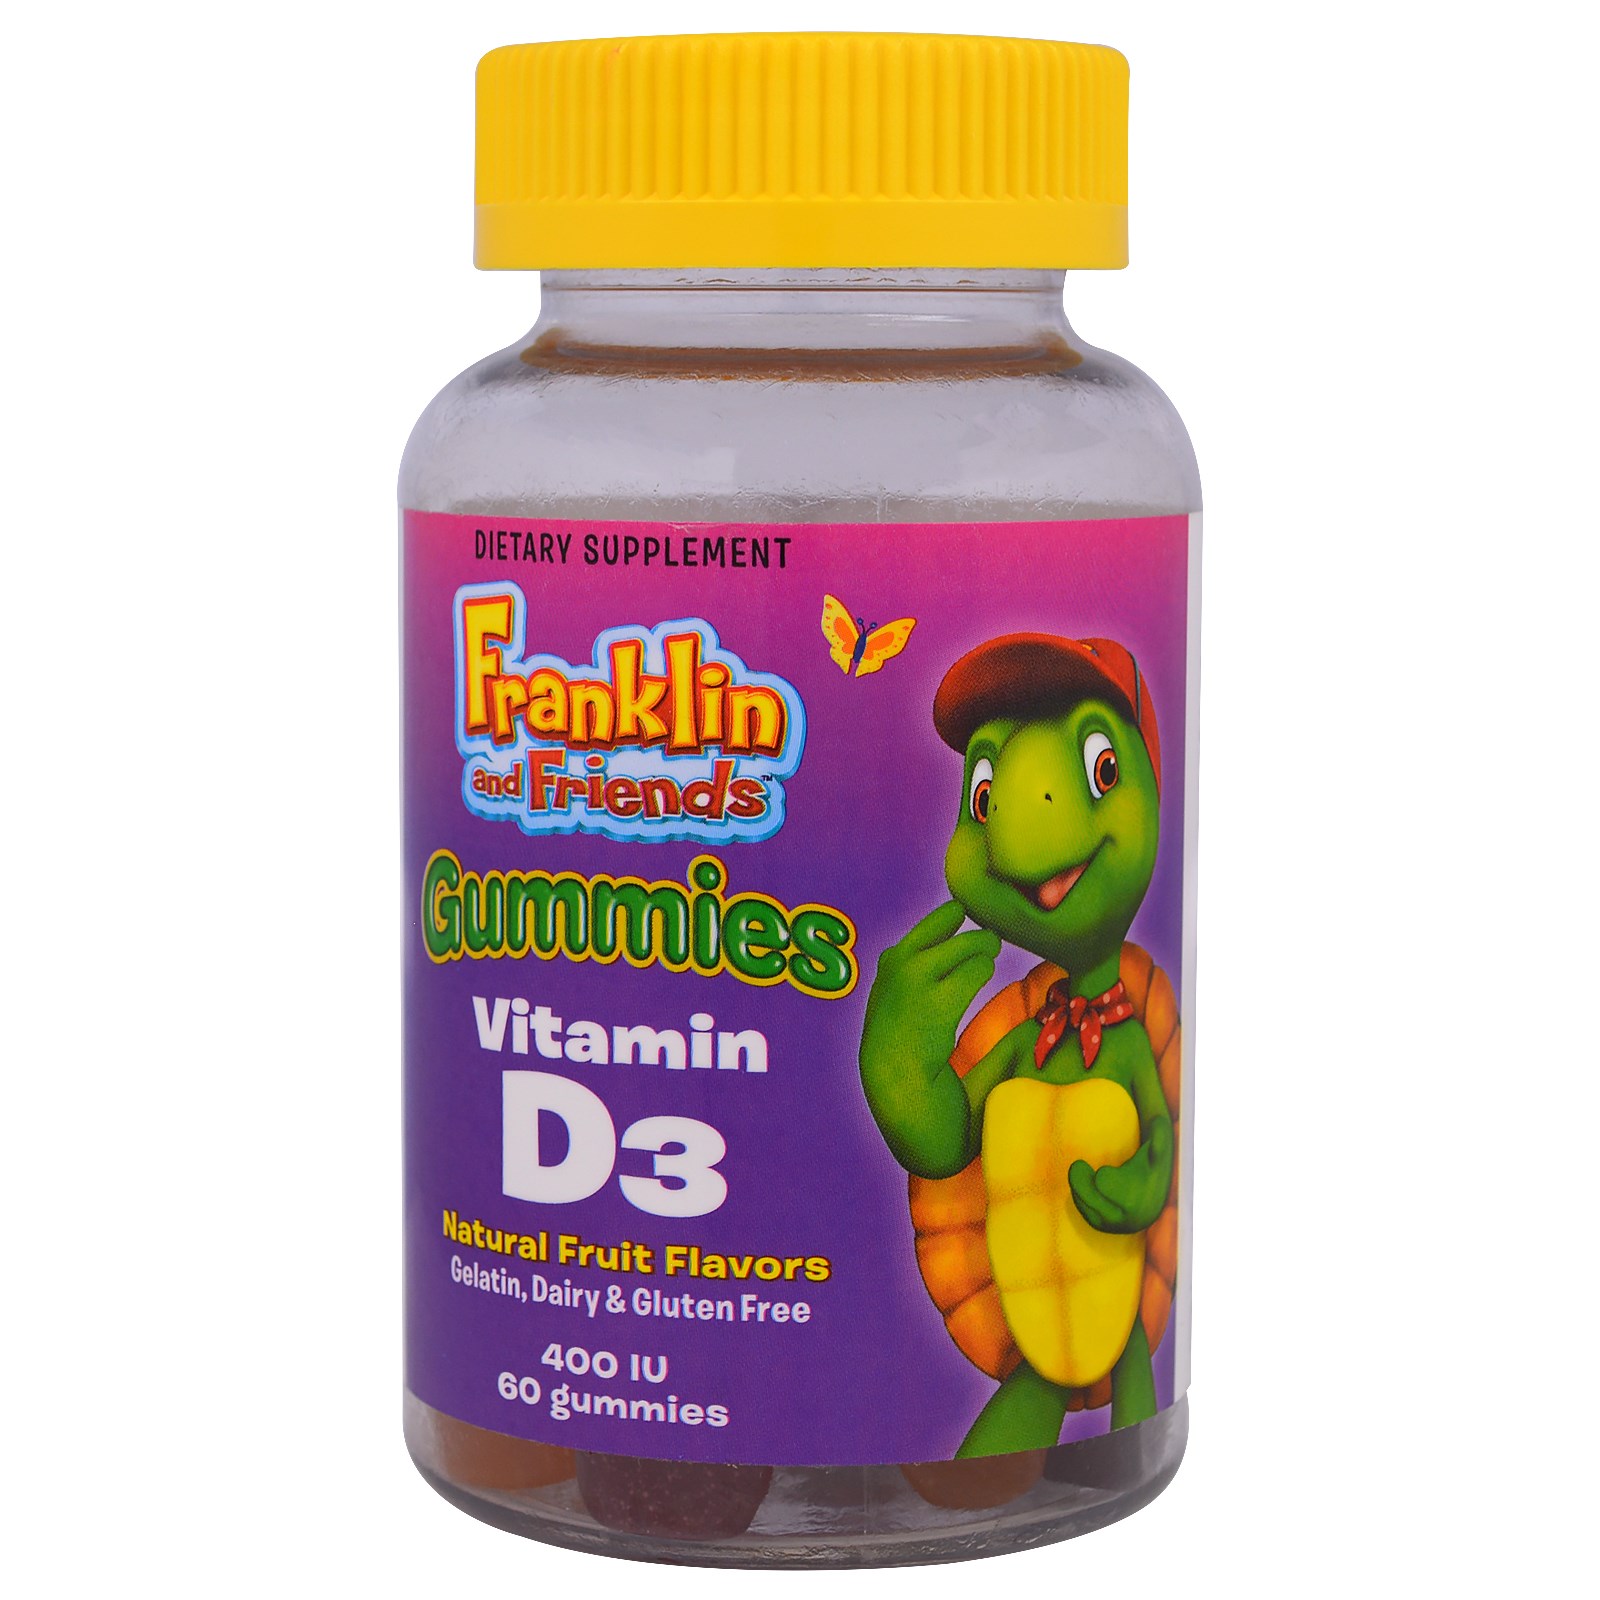 Chewable vitamin. Витамины детские жевательные д3. Жевательные витамины с витамином д3. Витамин д3 для детей мармелад. Витамин д3 в мармеладках.